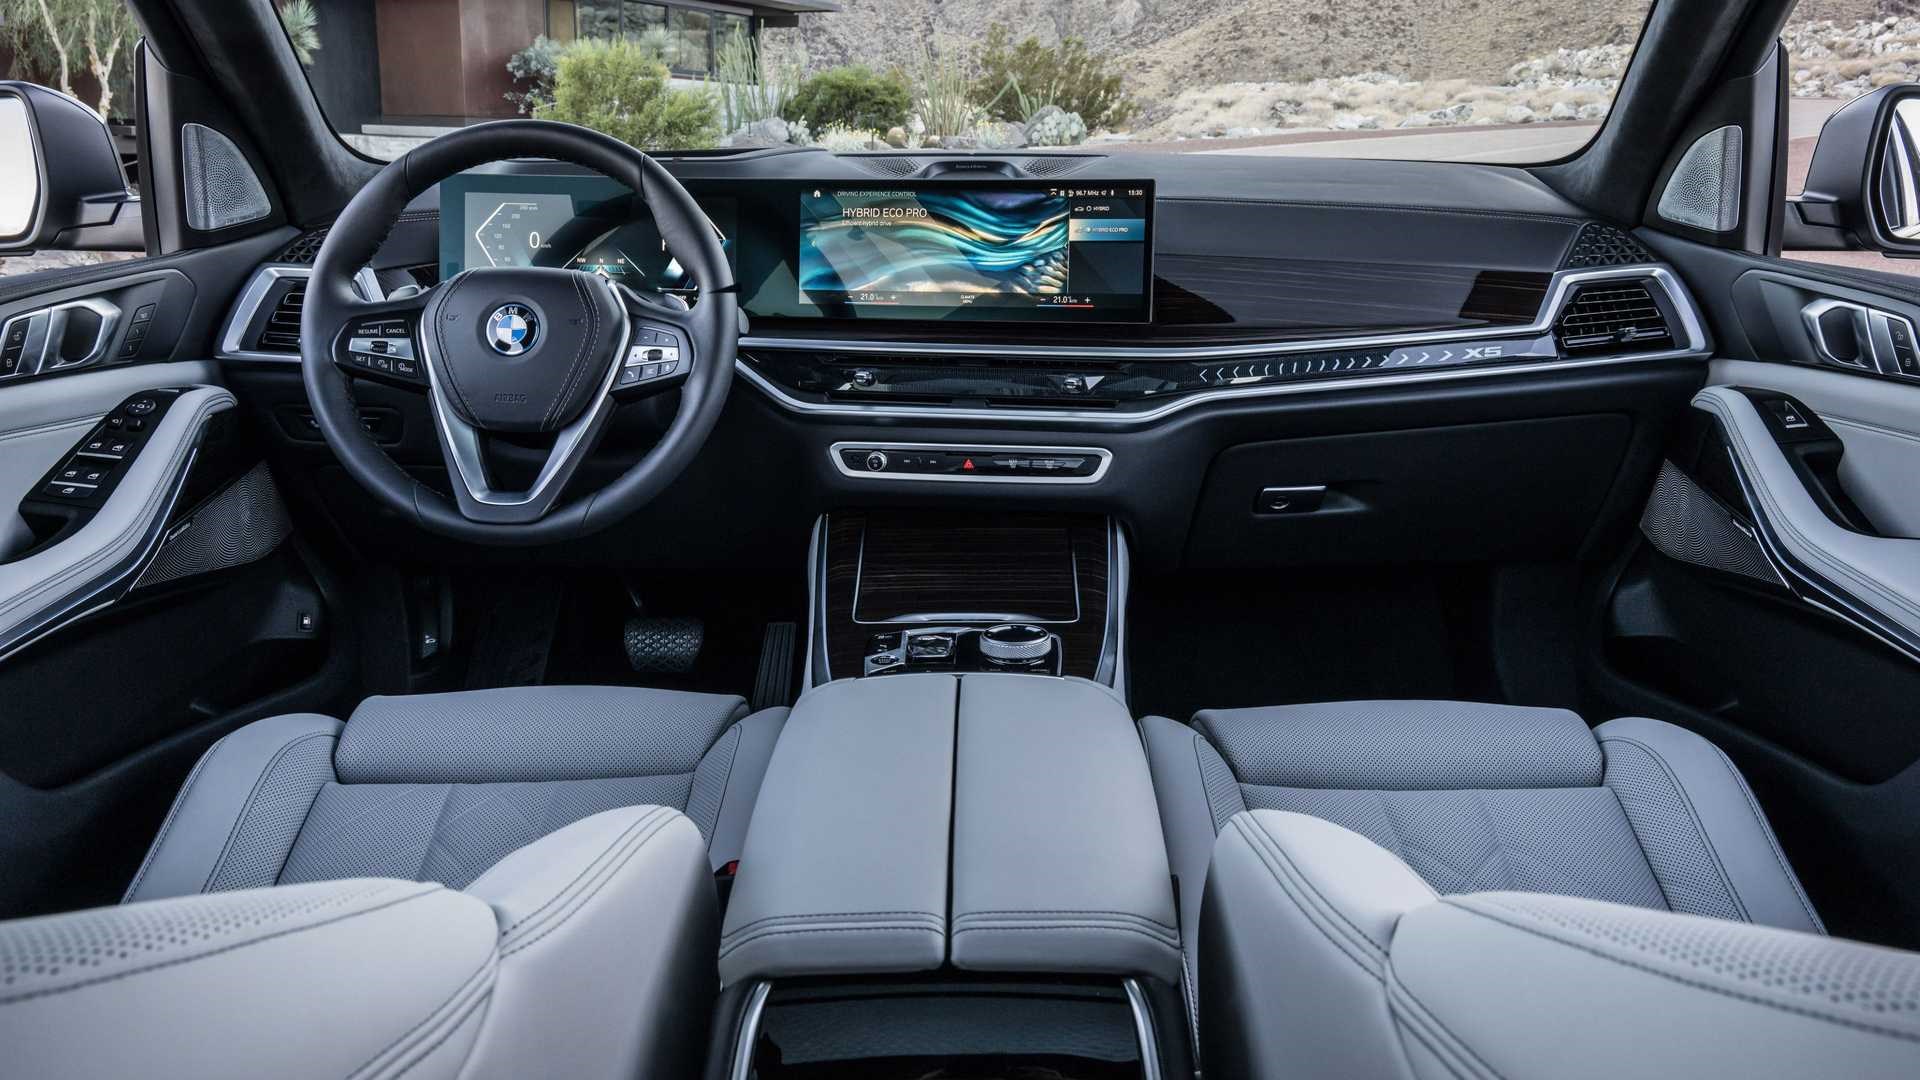 Yeni BMW X5 ve X6 tanıtıldı: İşte tasarımı ve özellikleri